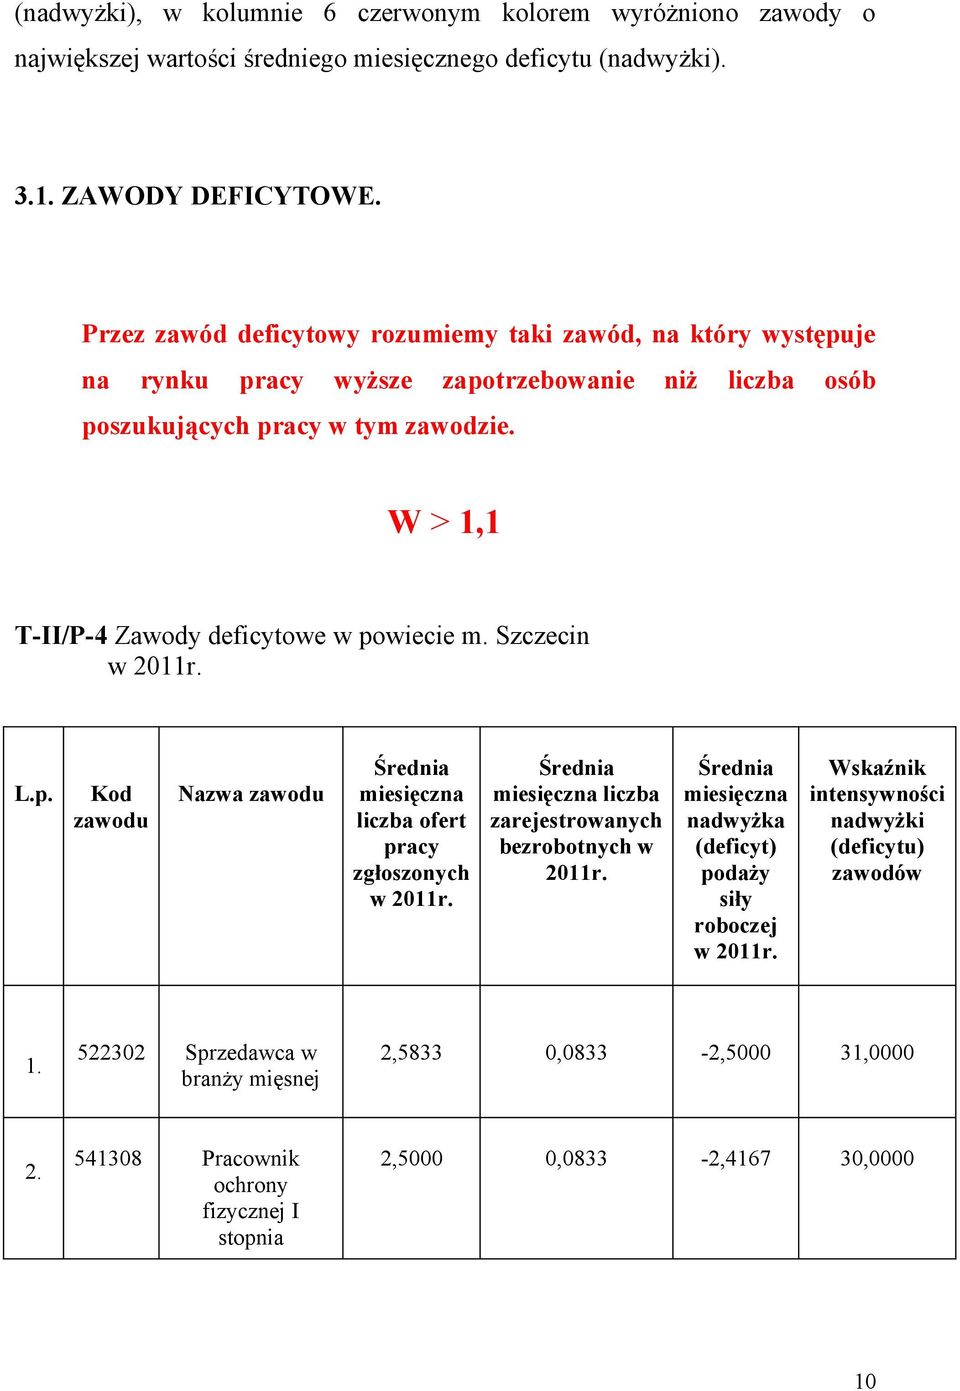 W > 1,1 T-II/P-4 Zawody deficytowe w powiecie m. Szczecin w 2011r. L.p. Kod zawodu Nazwa zawodu Średnia miesięczna liczba ofert pracy zgłoszonych w 2011r.